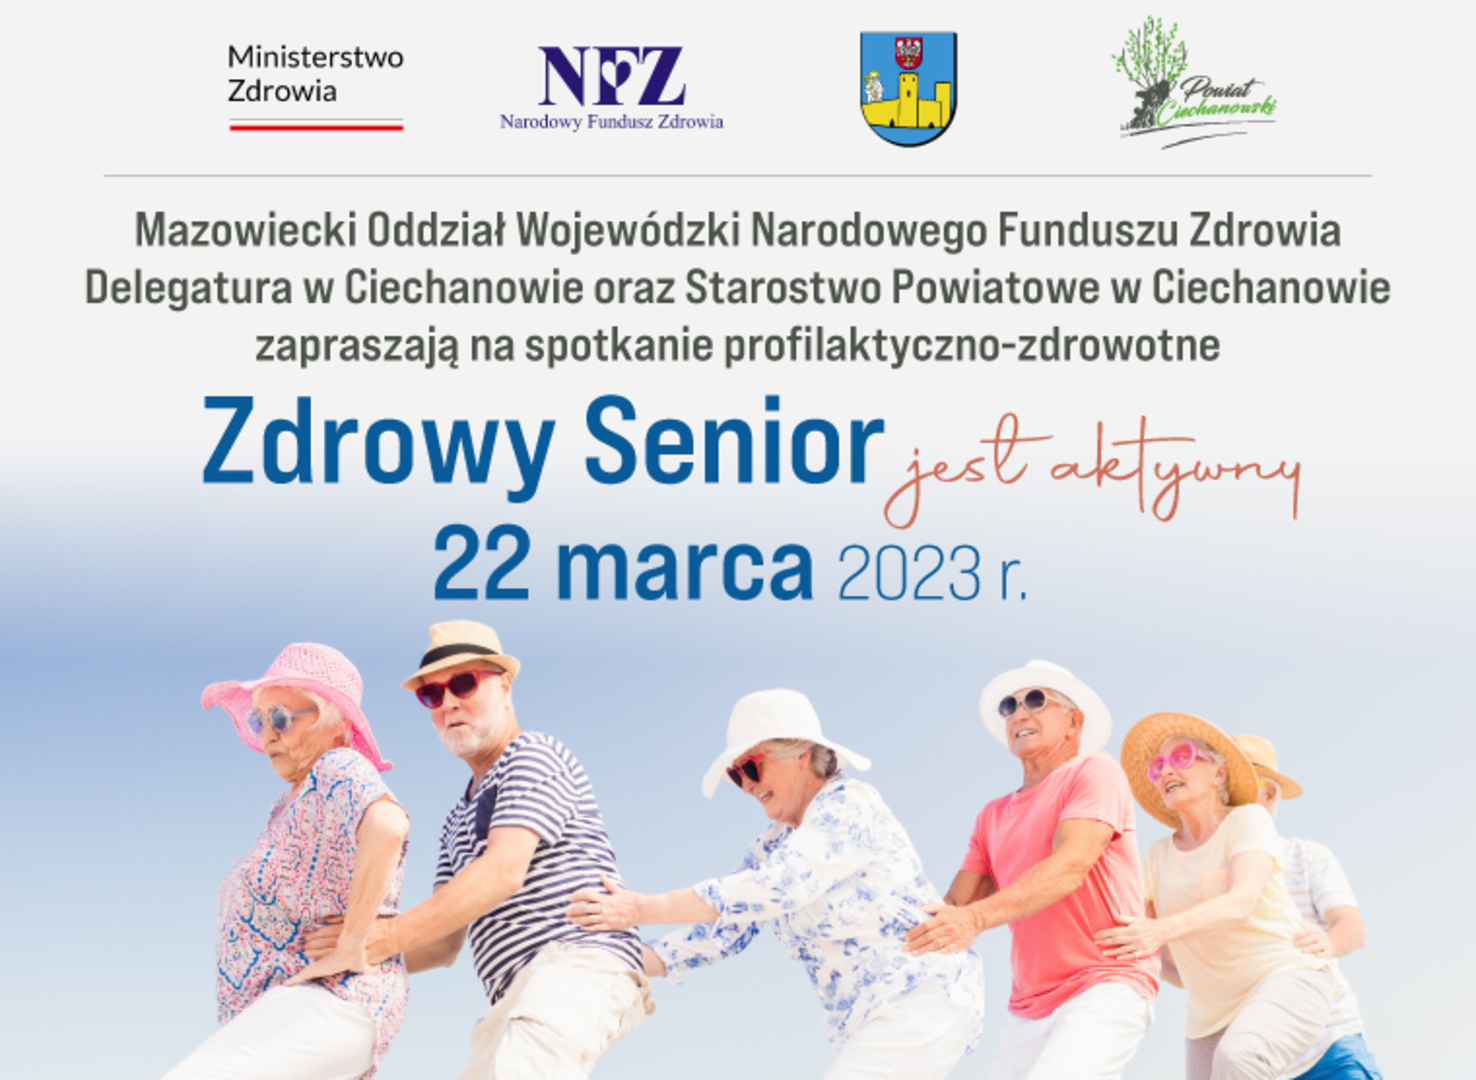 2023-03-22-NFZ-zdrowy-senior-jest-aktywny-www-v2.jpg